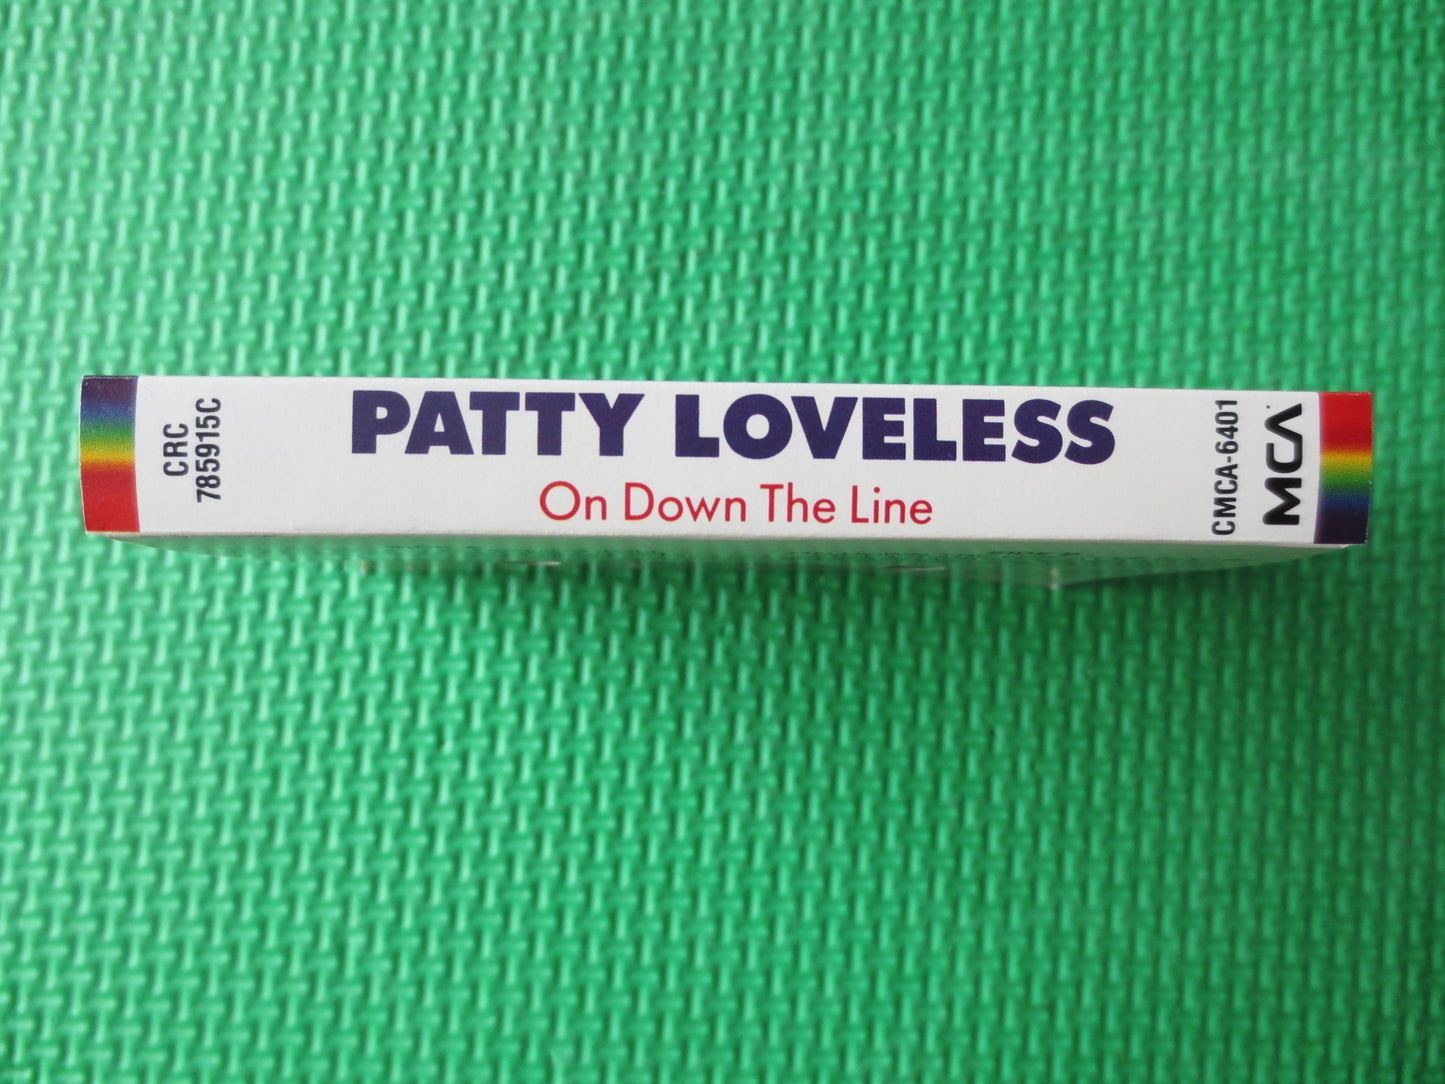 PATTY LOVELESS, On DOWN the Line, Patty Loveless Tape, Patty Loveless Album, Tapes, Tape Cassette, Cassette, 1990 Cassette